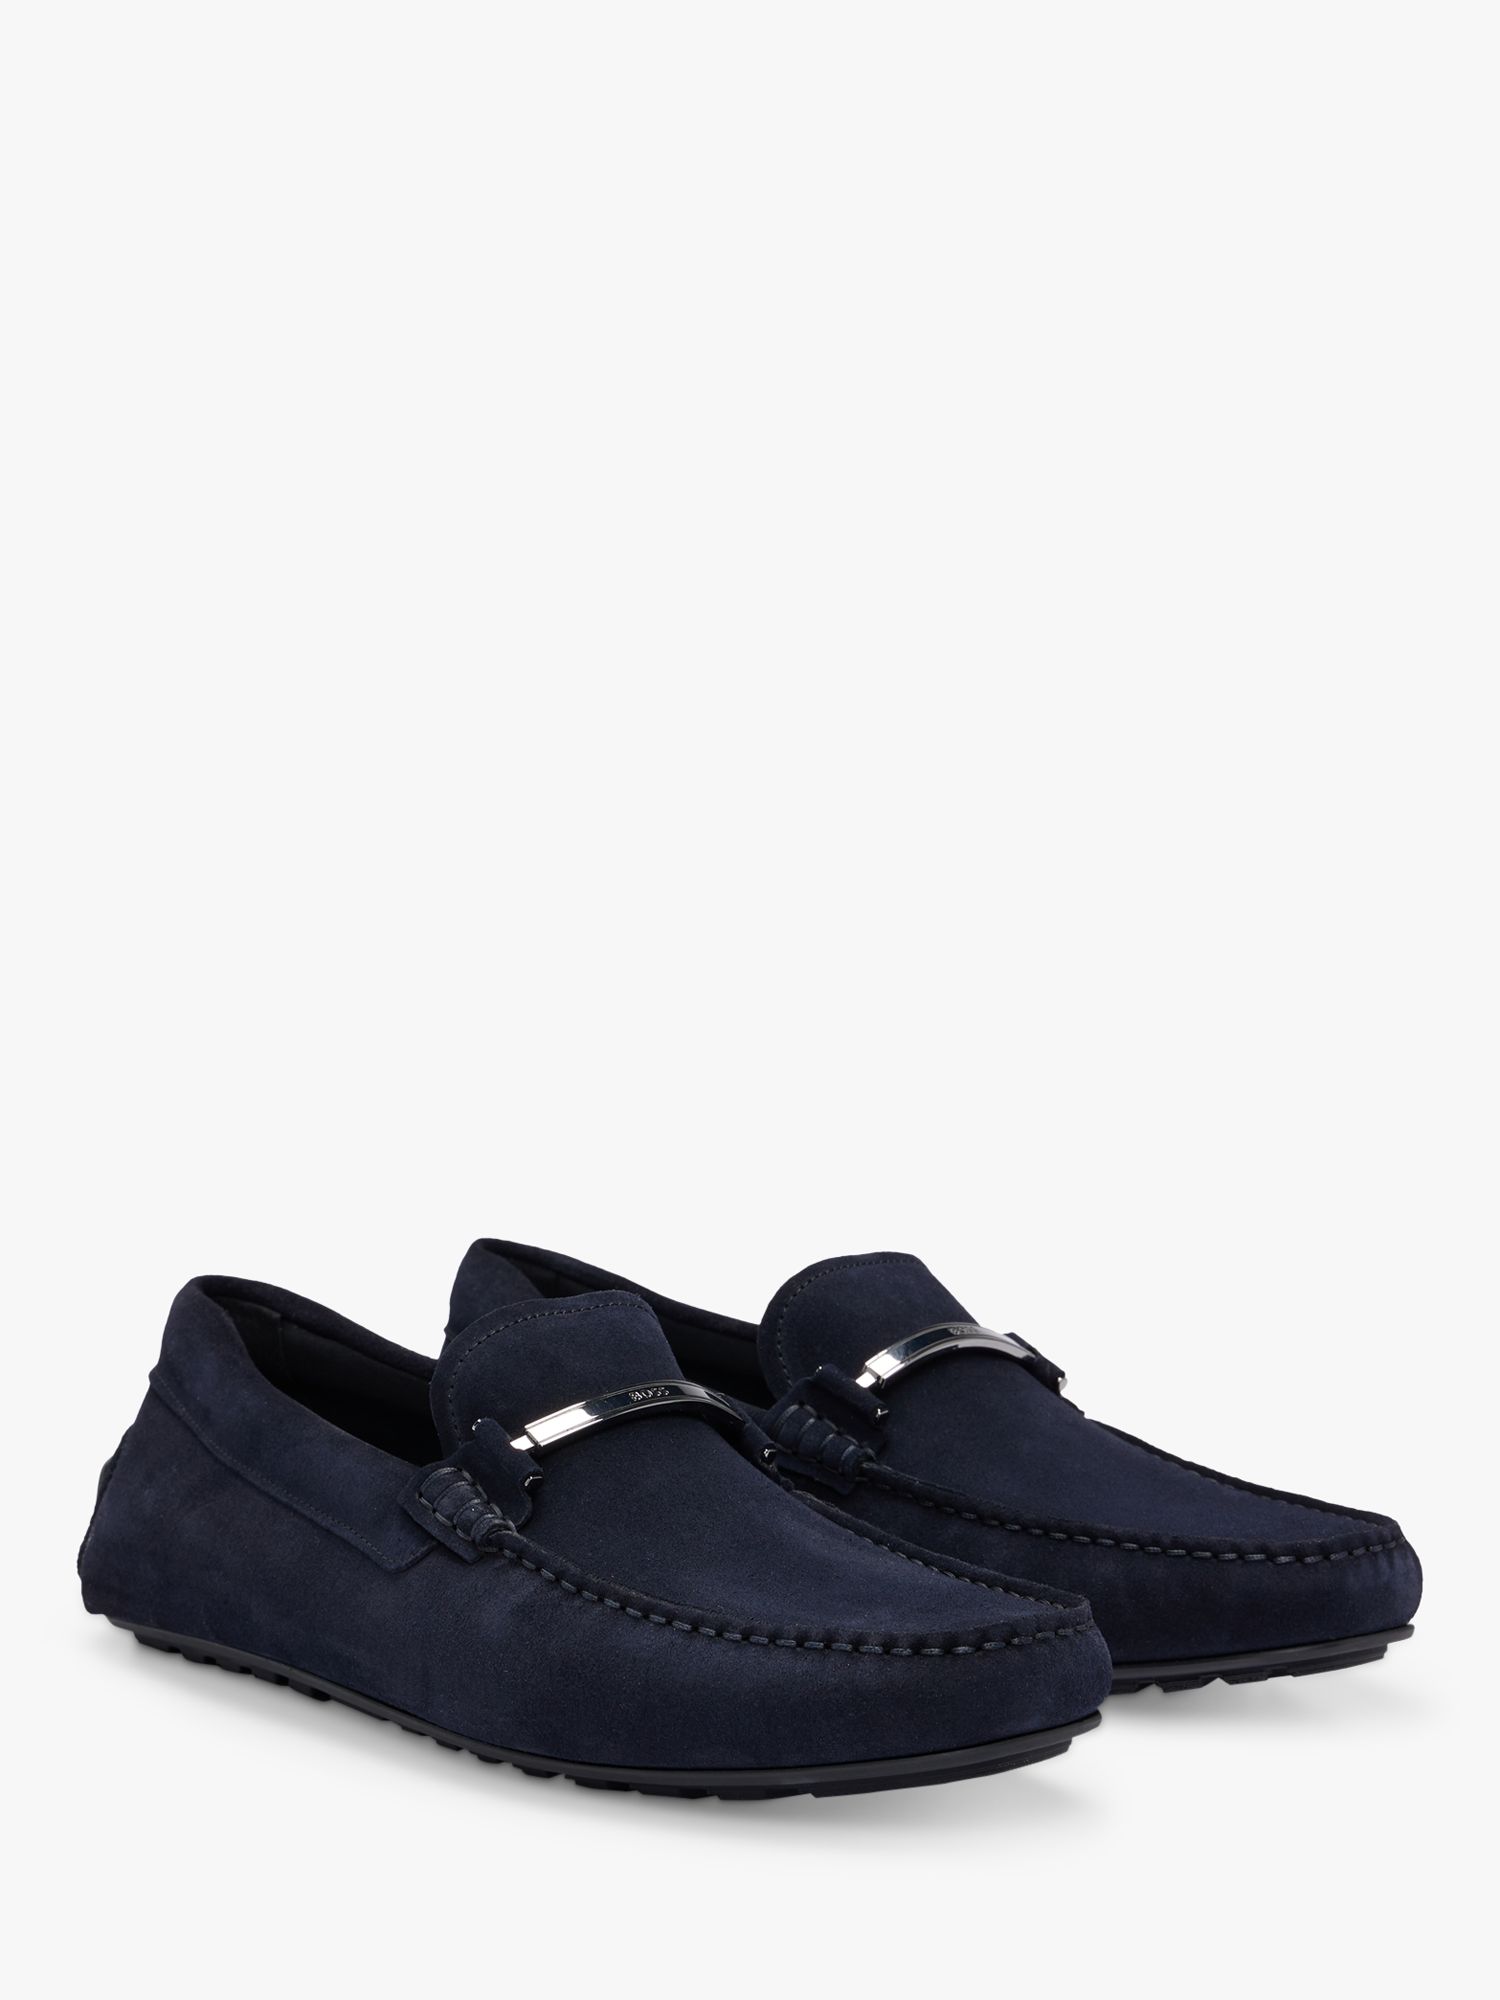 BOSS Noel Leather Loafers, Dark Blue, 8